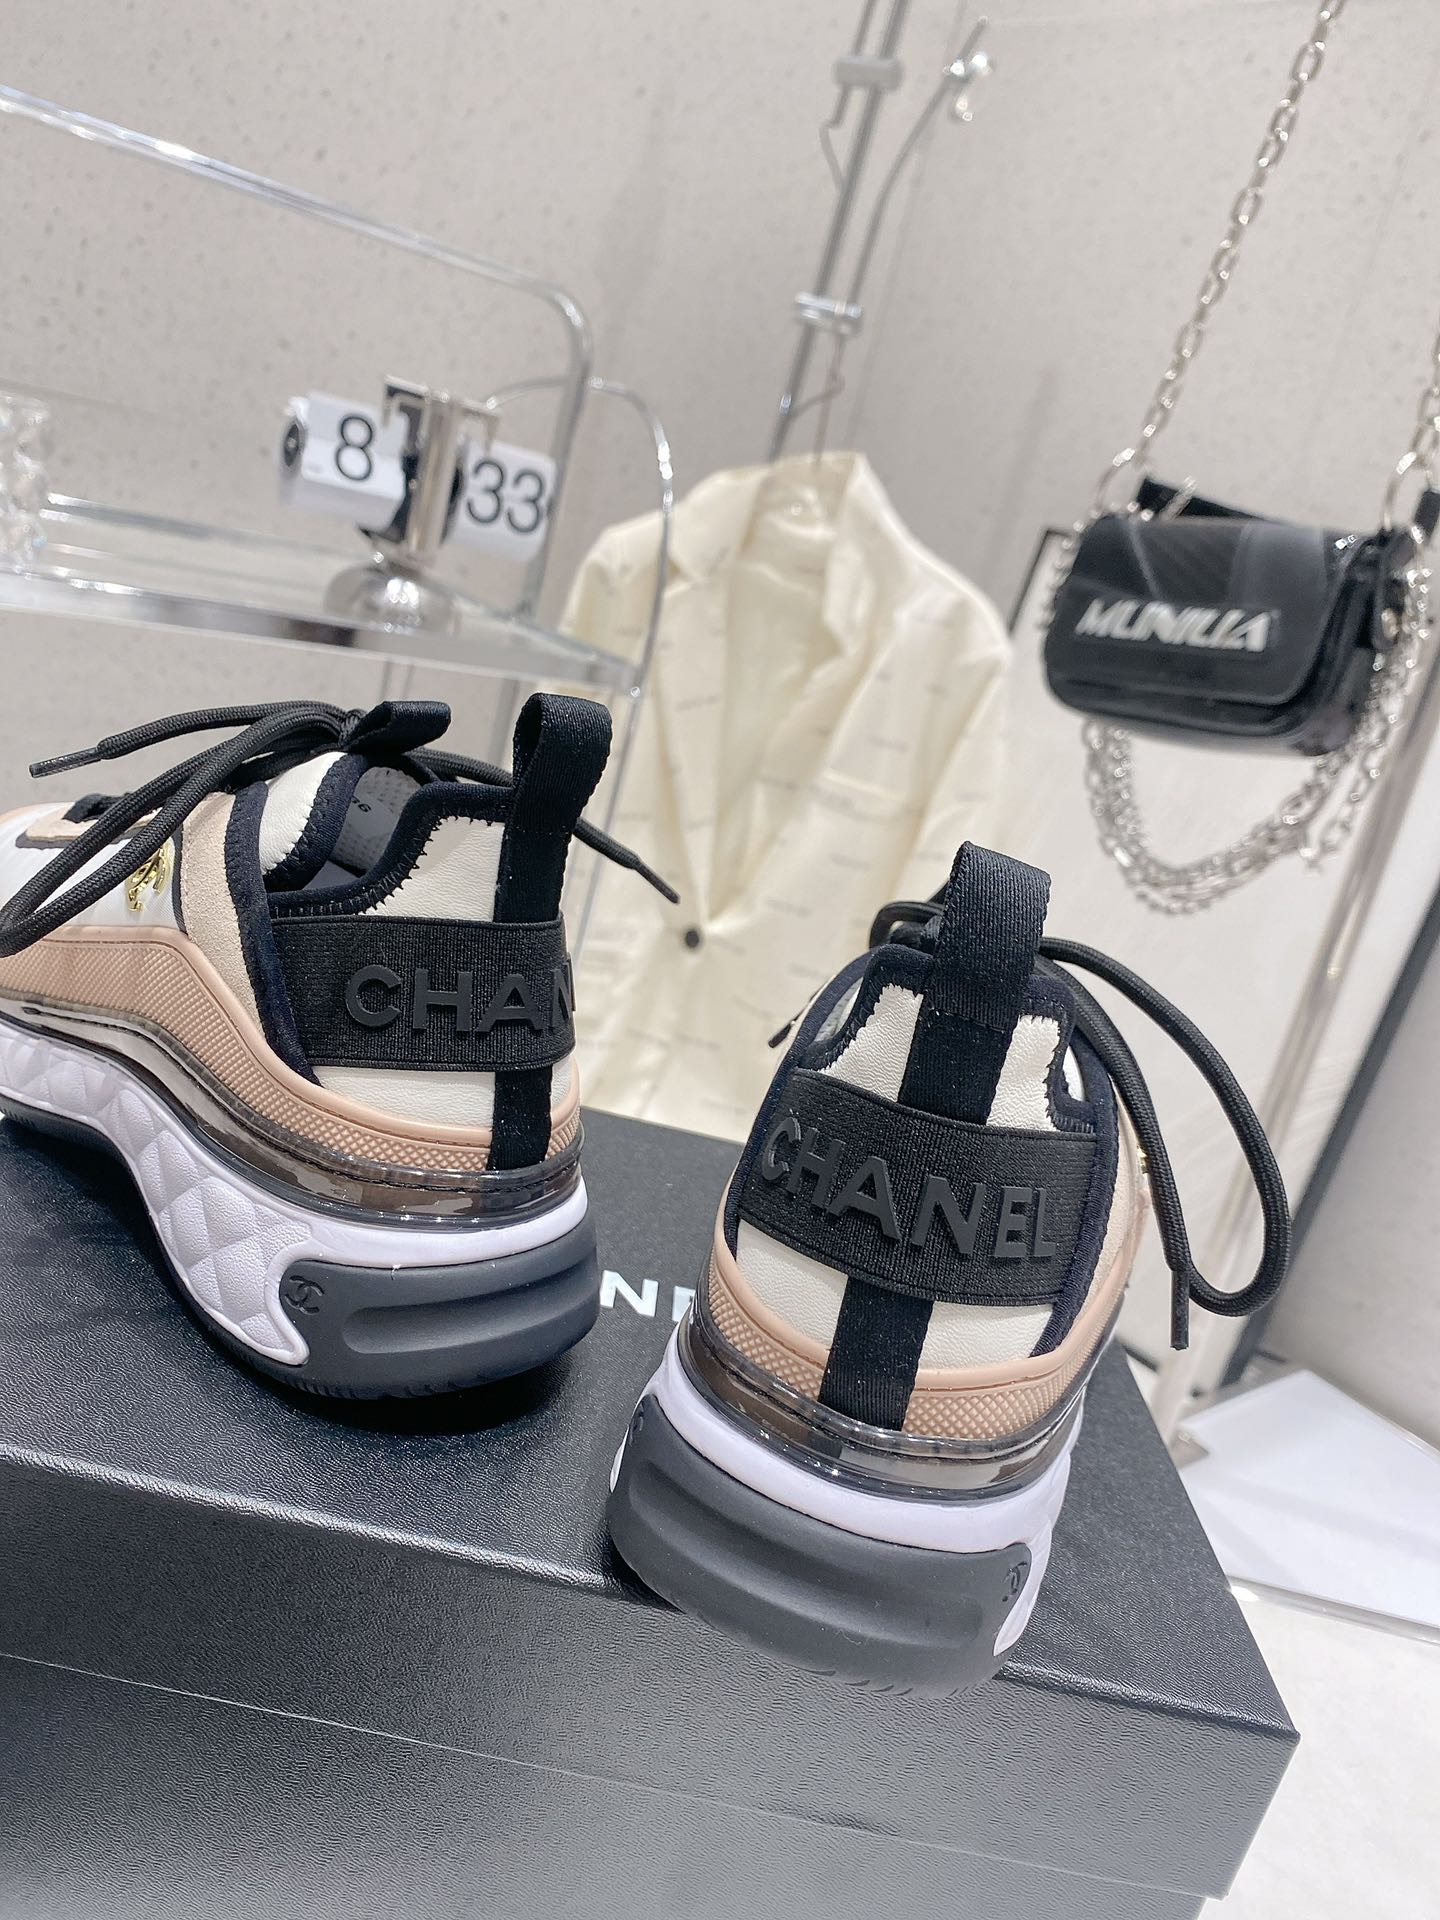 Chanel香奈儿23新色运动鞋经典